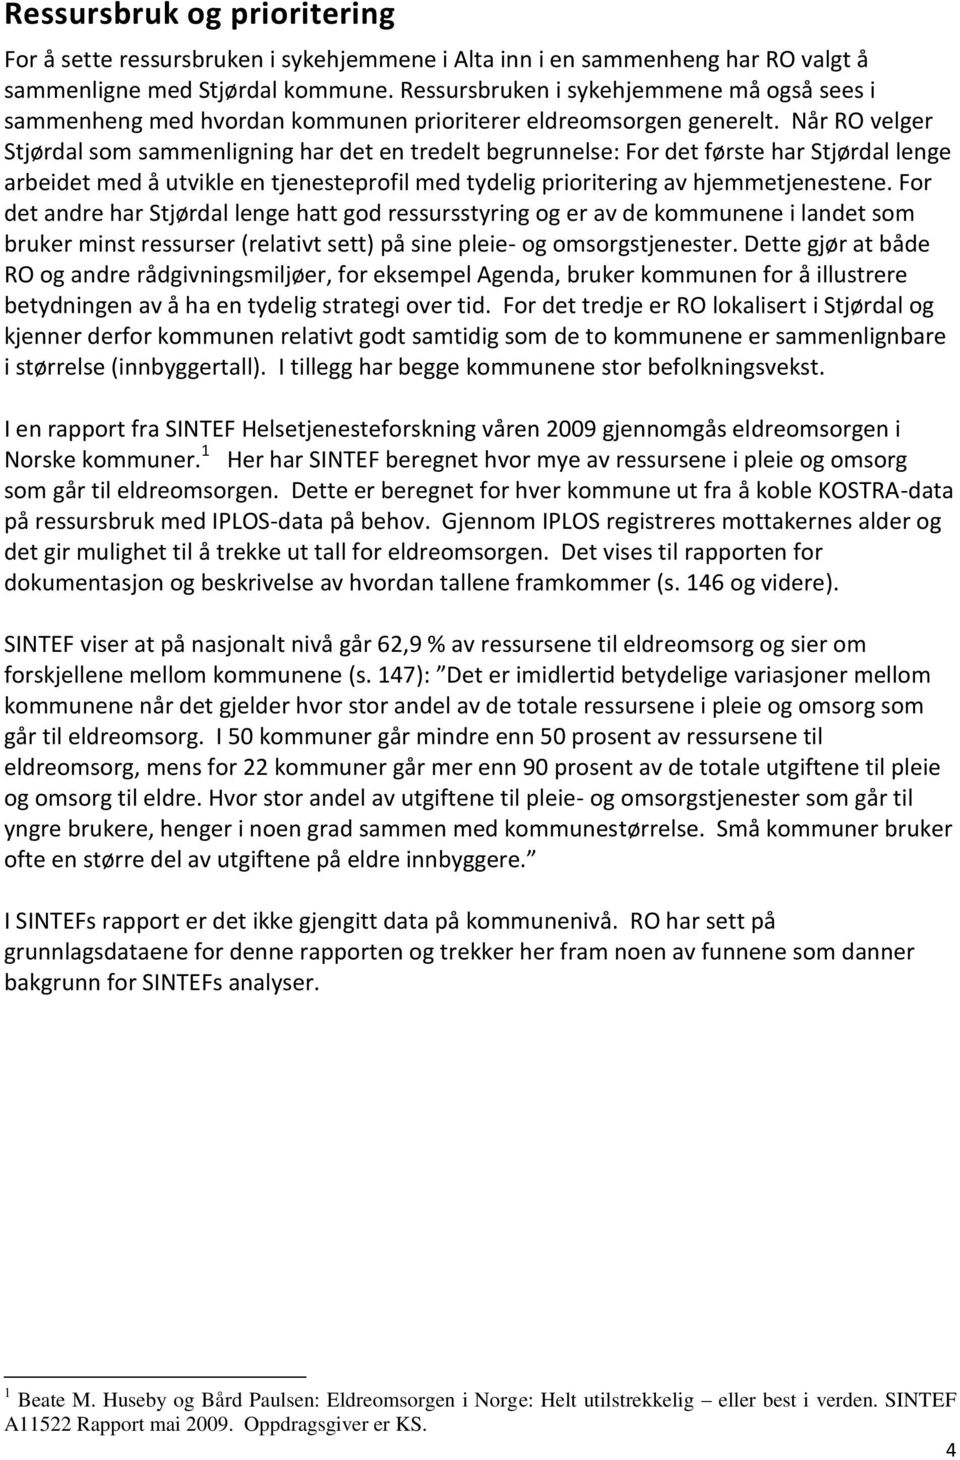 Når RO velger Stjørdal som sammenligning har det en tredelt begrunnelse: For det første har Stjørdal lenge arbeidet med å utvikle en tjenesteprofil med tydelig prioritering av hjemmetjenestene.